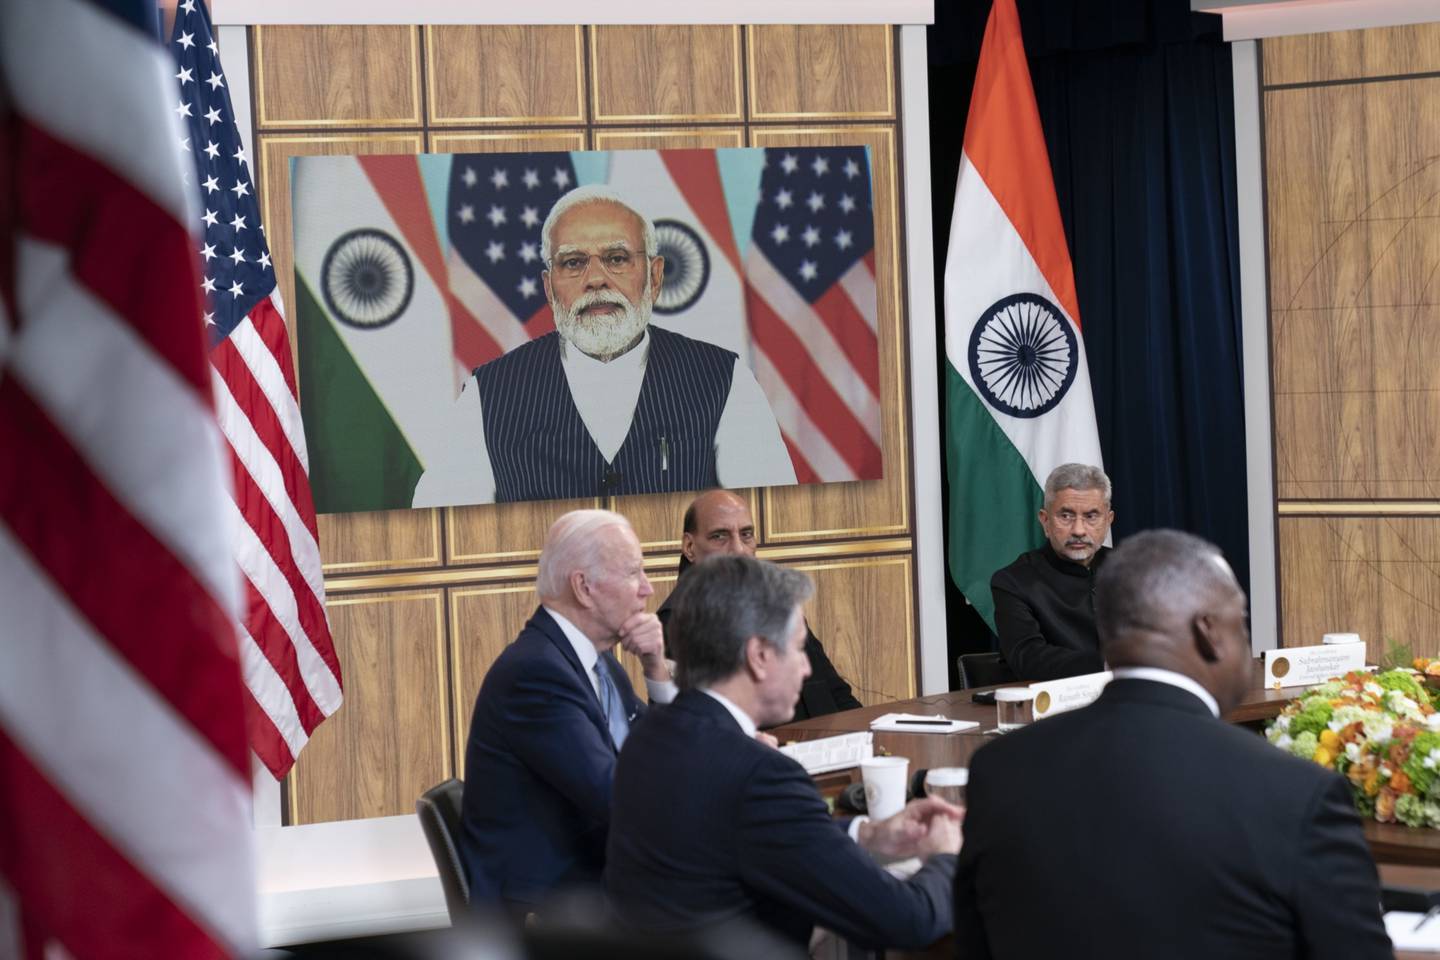 El presidente de Estados Unidos, Joe Biden, a la izquierda, se reúne virtualmente con Narendra Modi, primer ministro de la India, en el Despacho Oval de la Casa Blanca en Washington, D.C., Estados Unidos, el lunes 11 de abril de 2022.